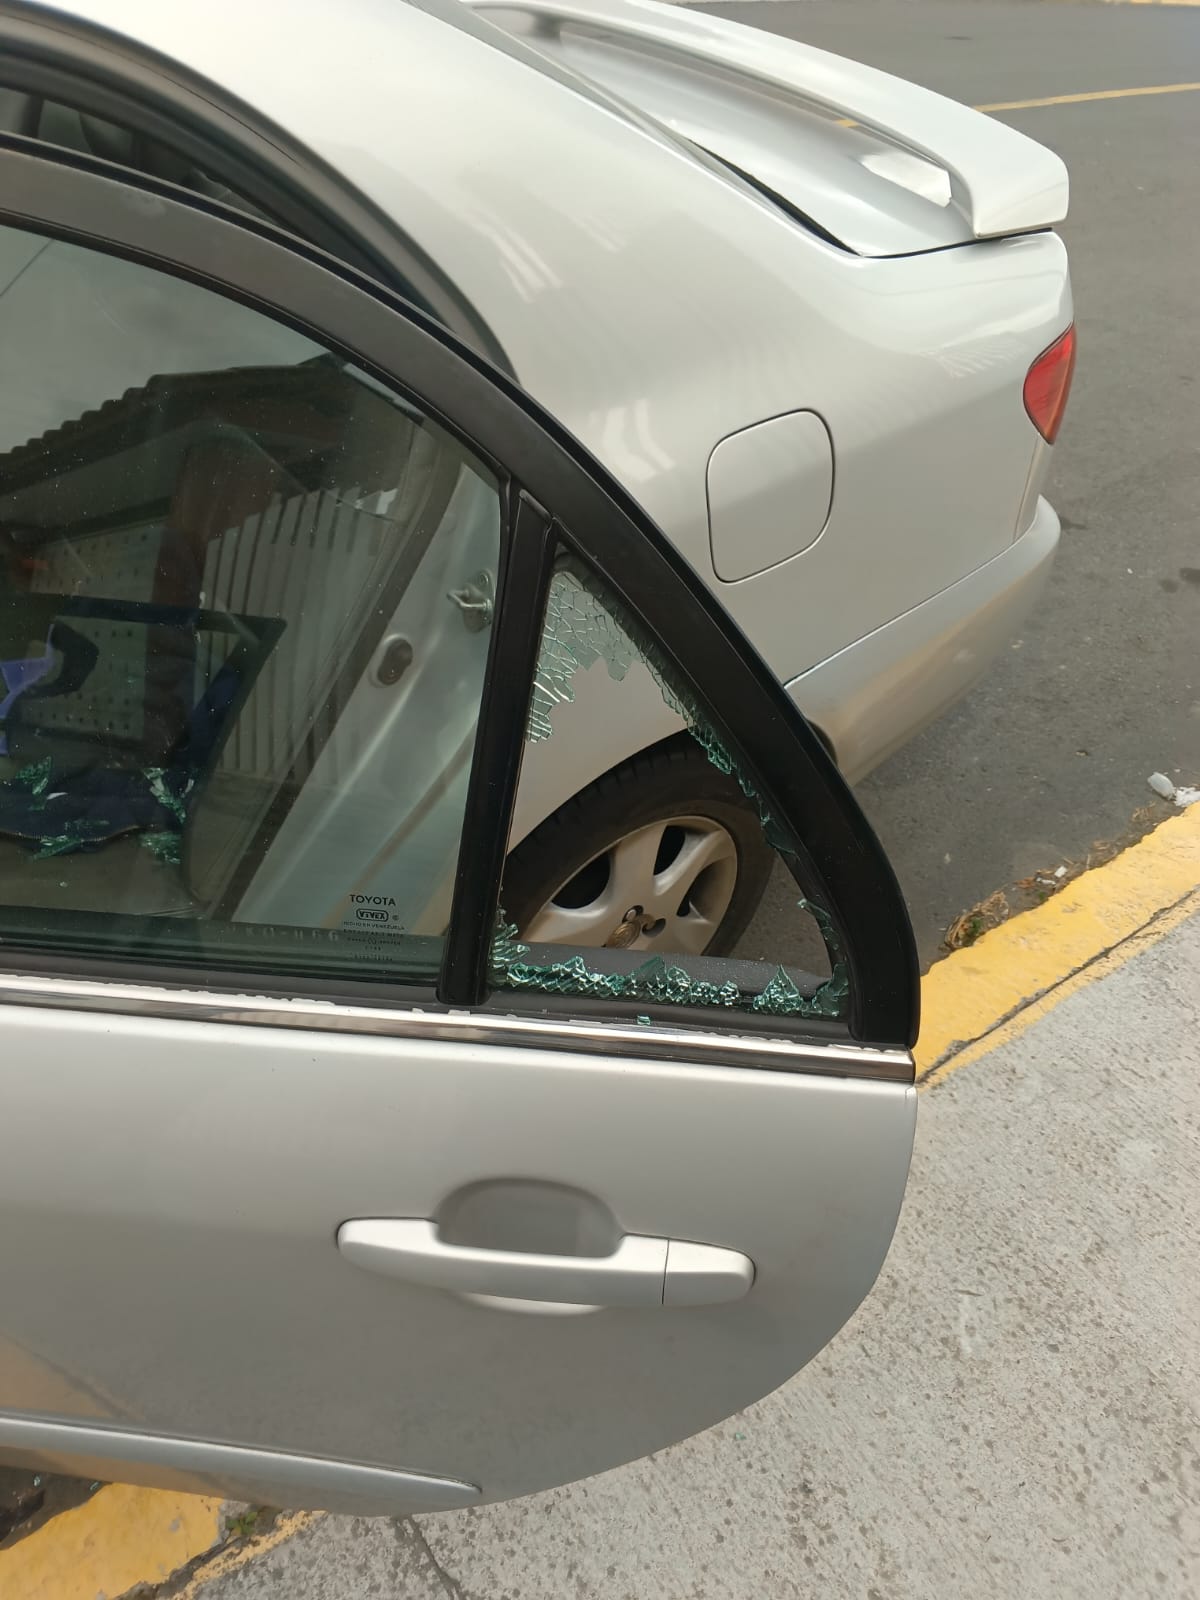 Los ladrones se llevaron varios accesorios del vehículo.